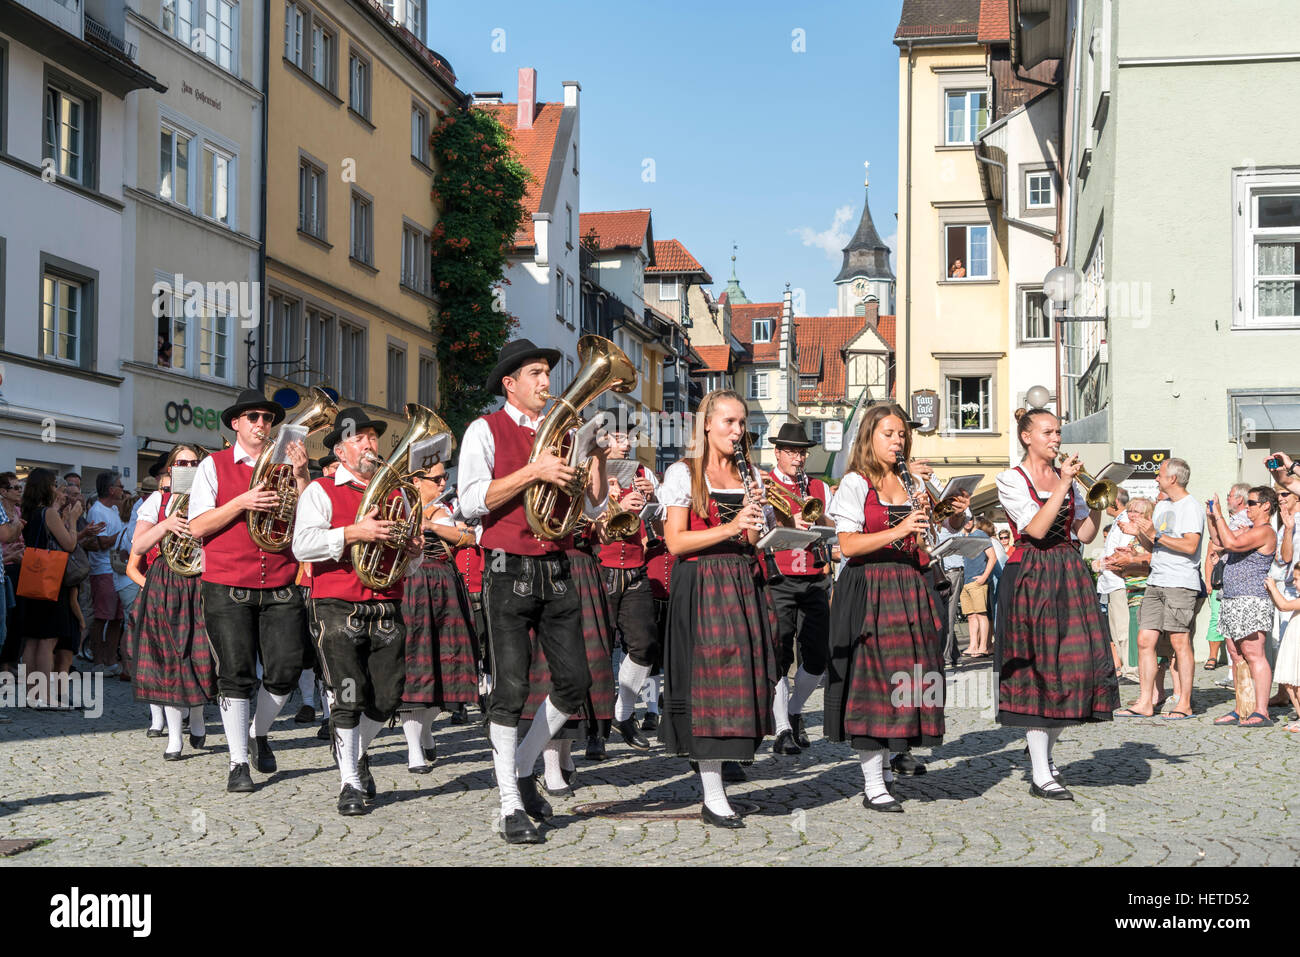 Parade mit Musikband in traditionellen Kostümen, Lindau, Bodensee, Bayern, Deutschland, Europa Stockfoto